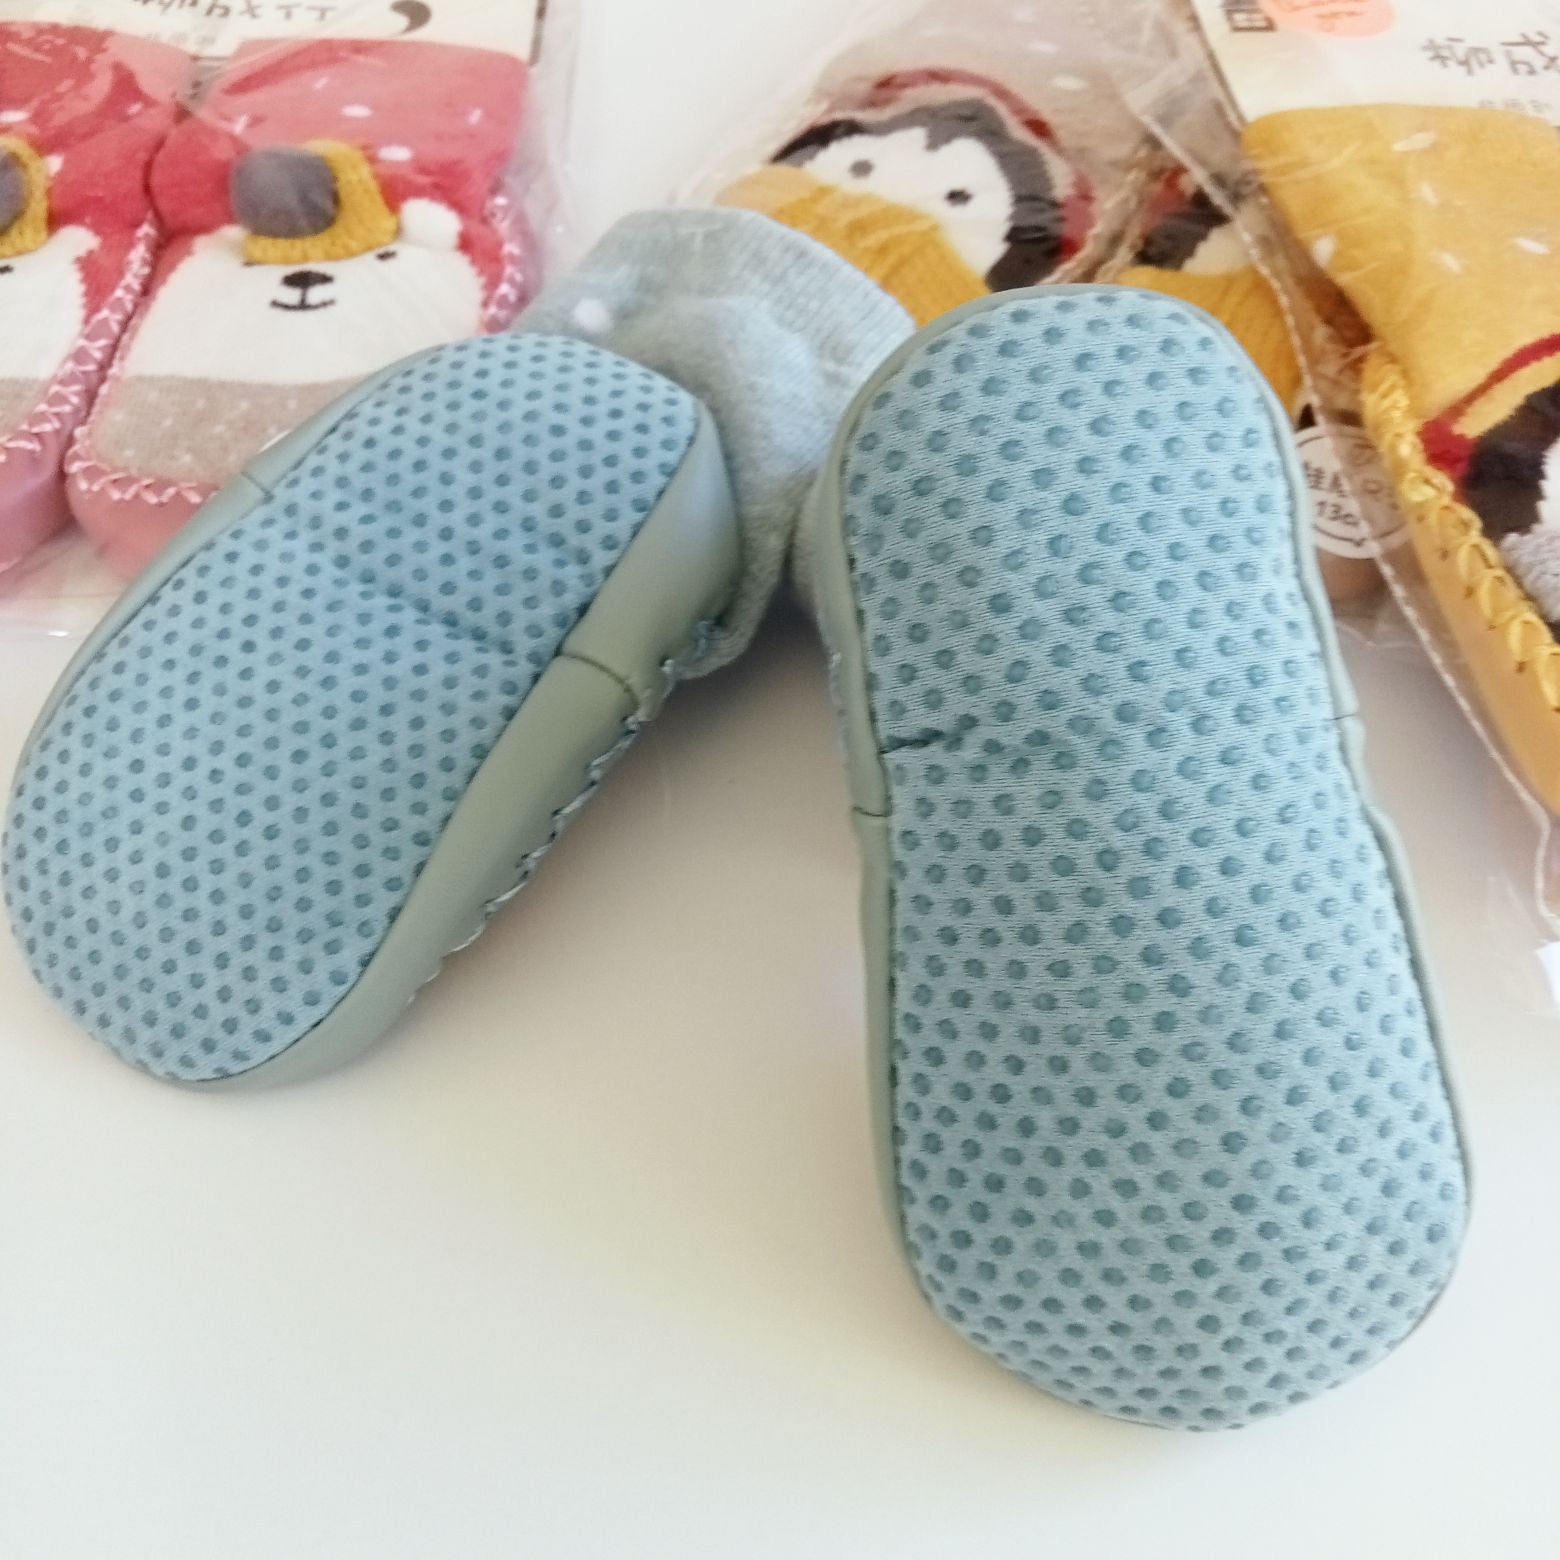 Toddler Shoe Socks/Slippers